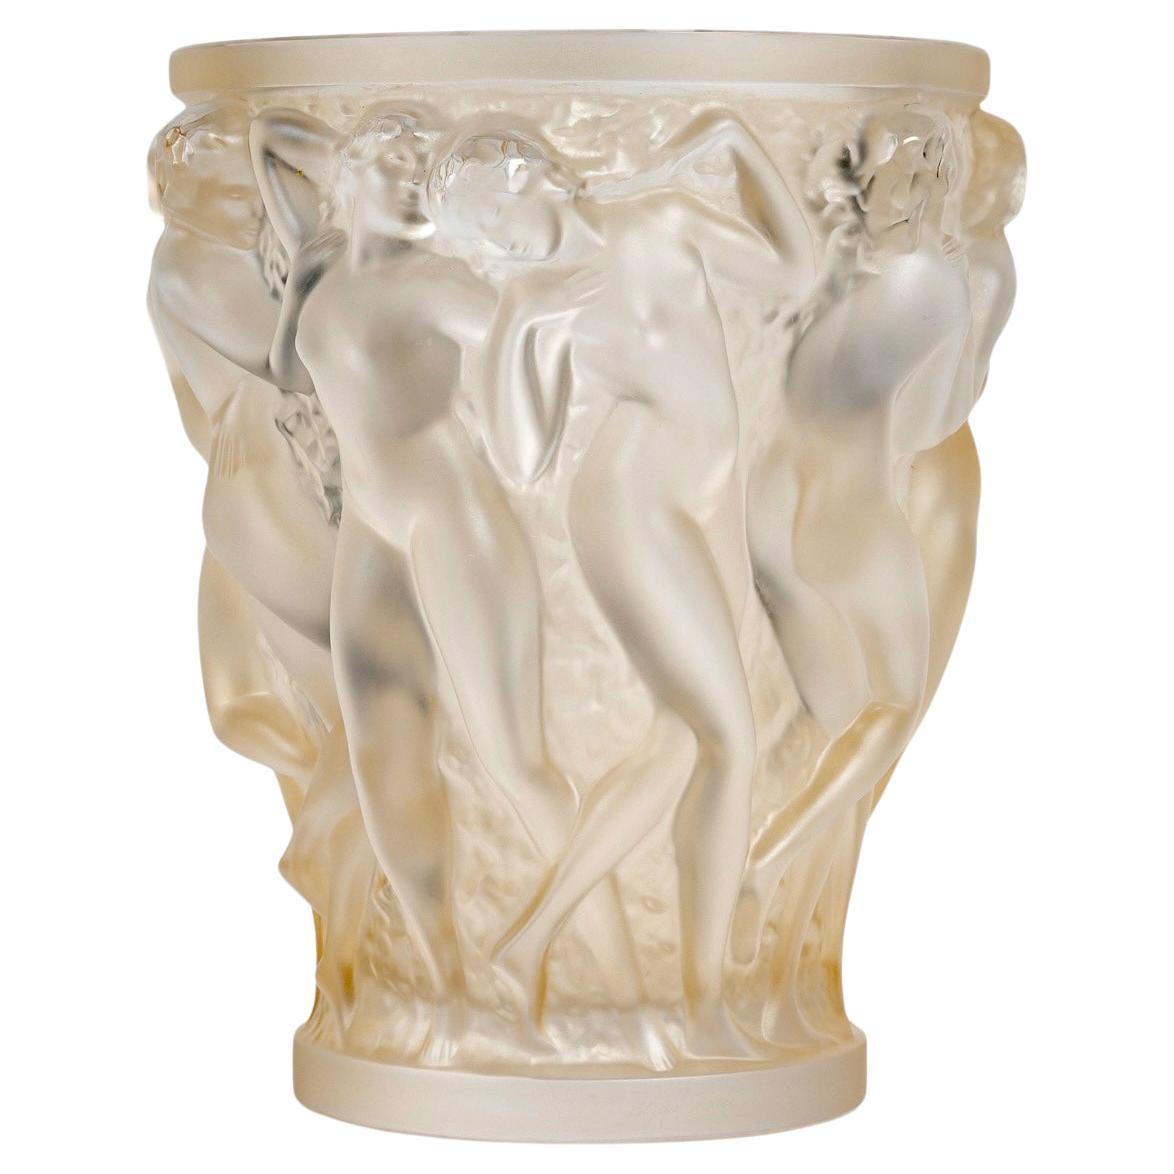 Lalique France After René Lalique - Vase Bacchantes Cristal dépoli Lustre d'or